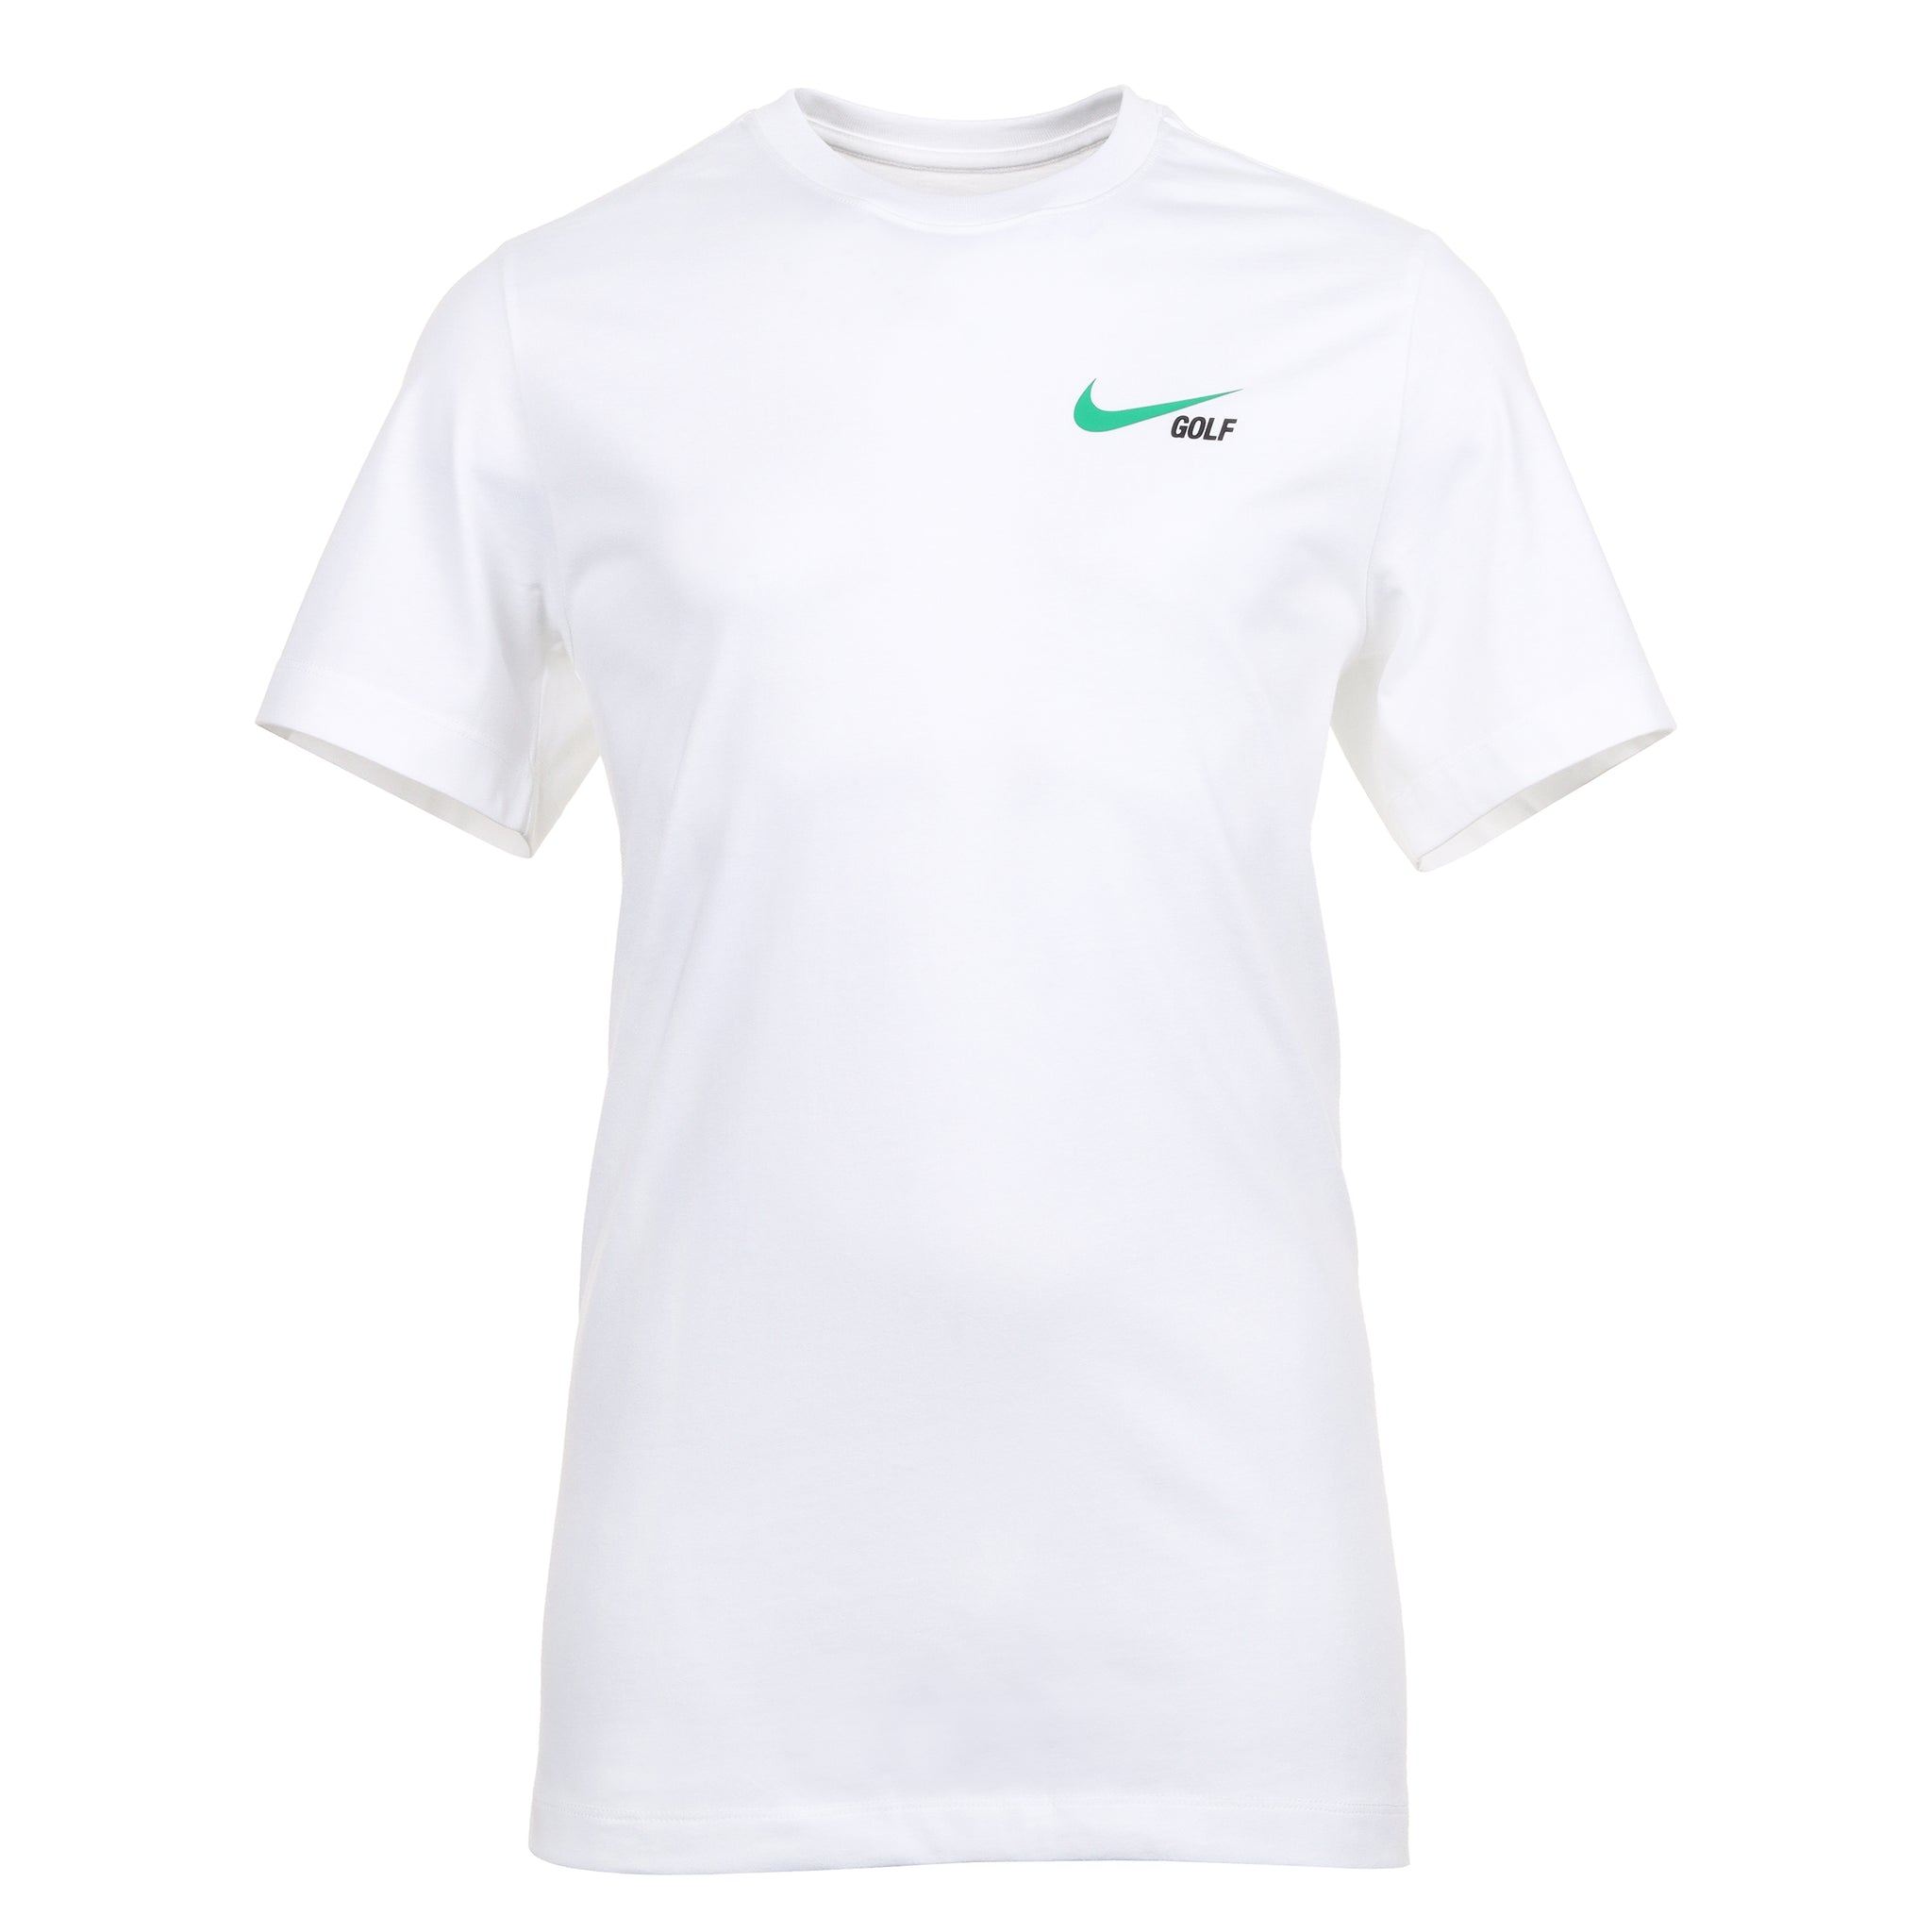 nike-golf-tee-shirt-fq4930-white-100